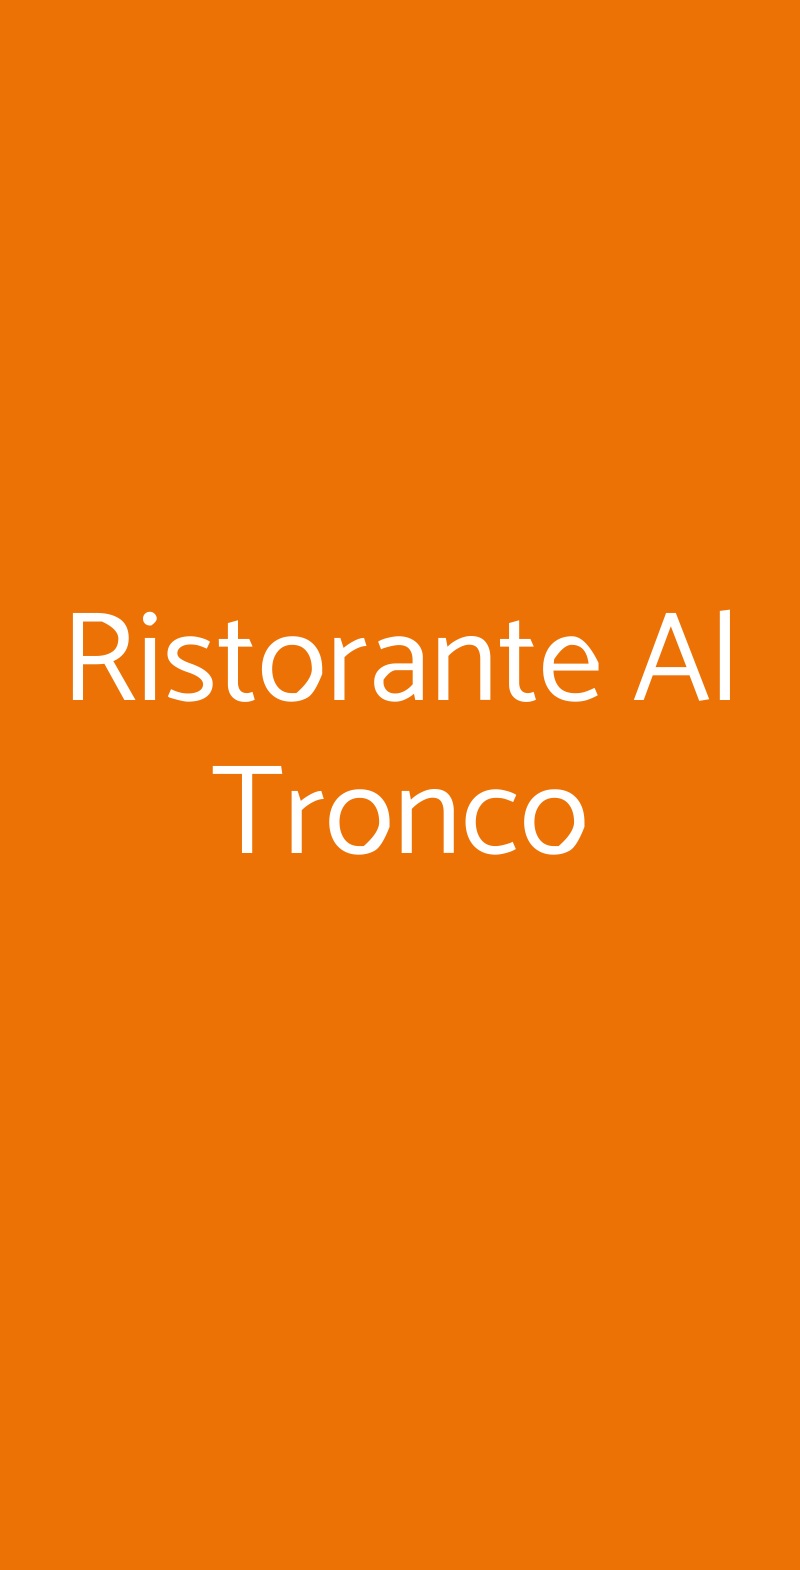 Ristorante Al Tronco Milano menù 1 pagina